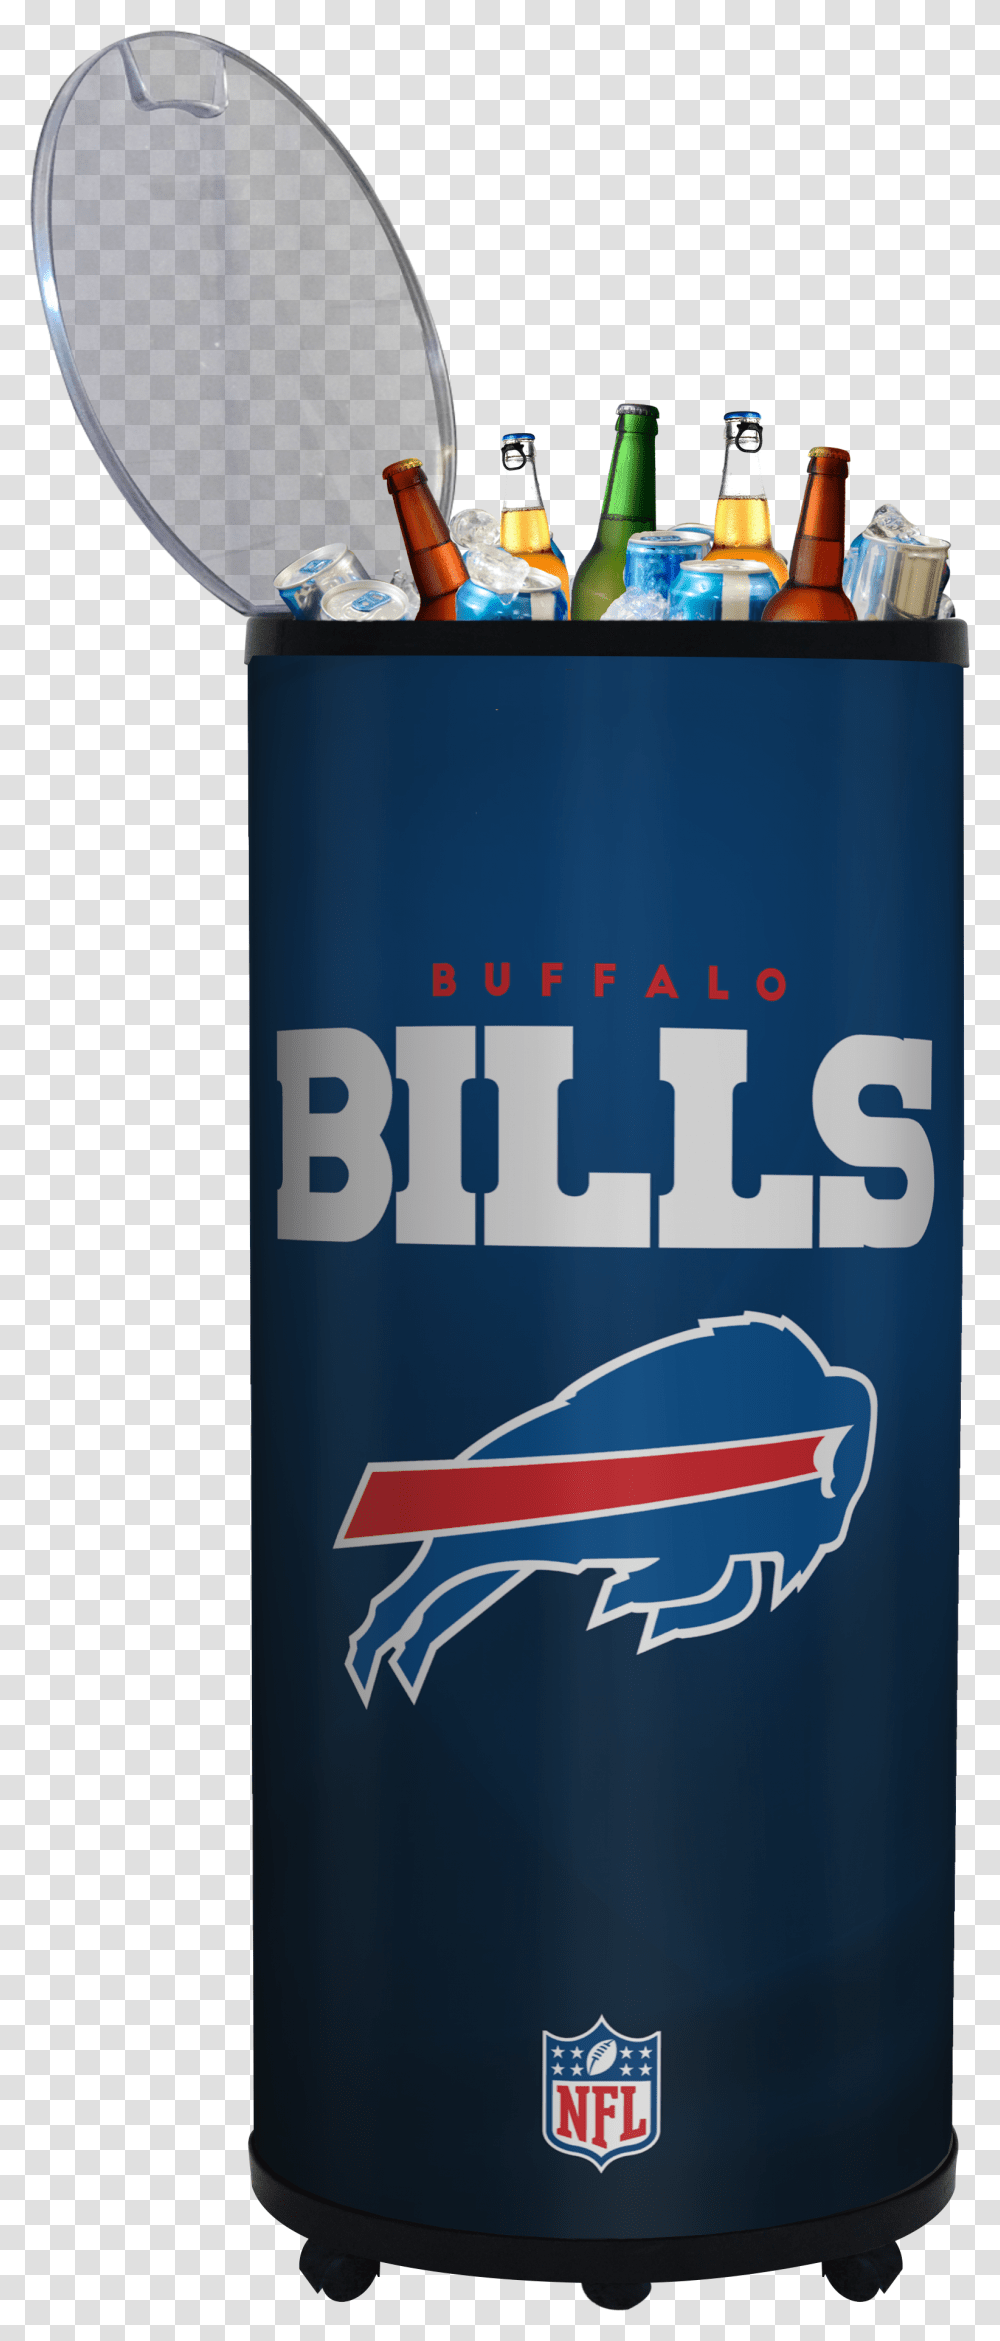 Buffalo Bills Poster, Tin, Can, Aluminium, Spray Can Transparent Png